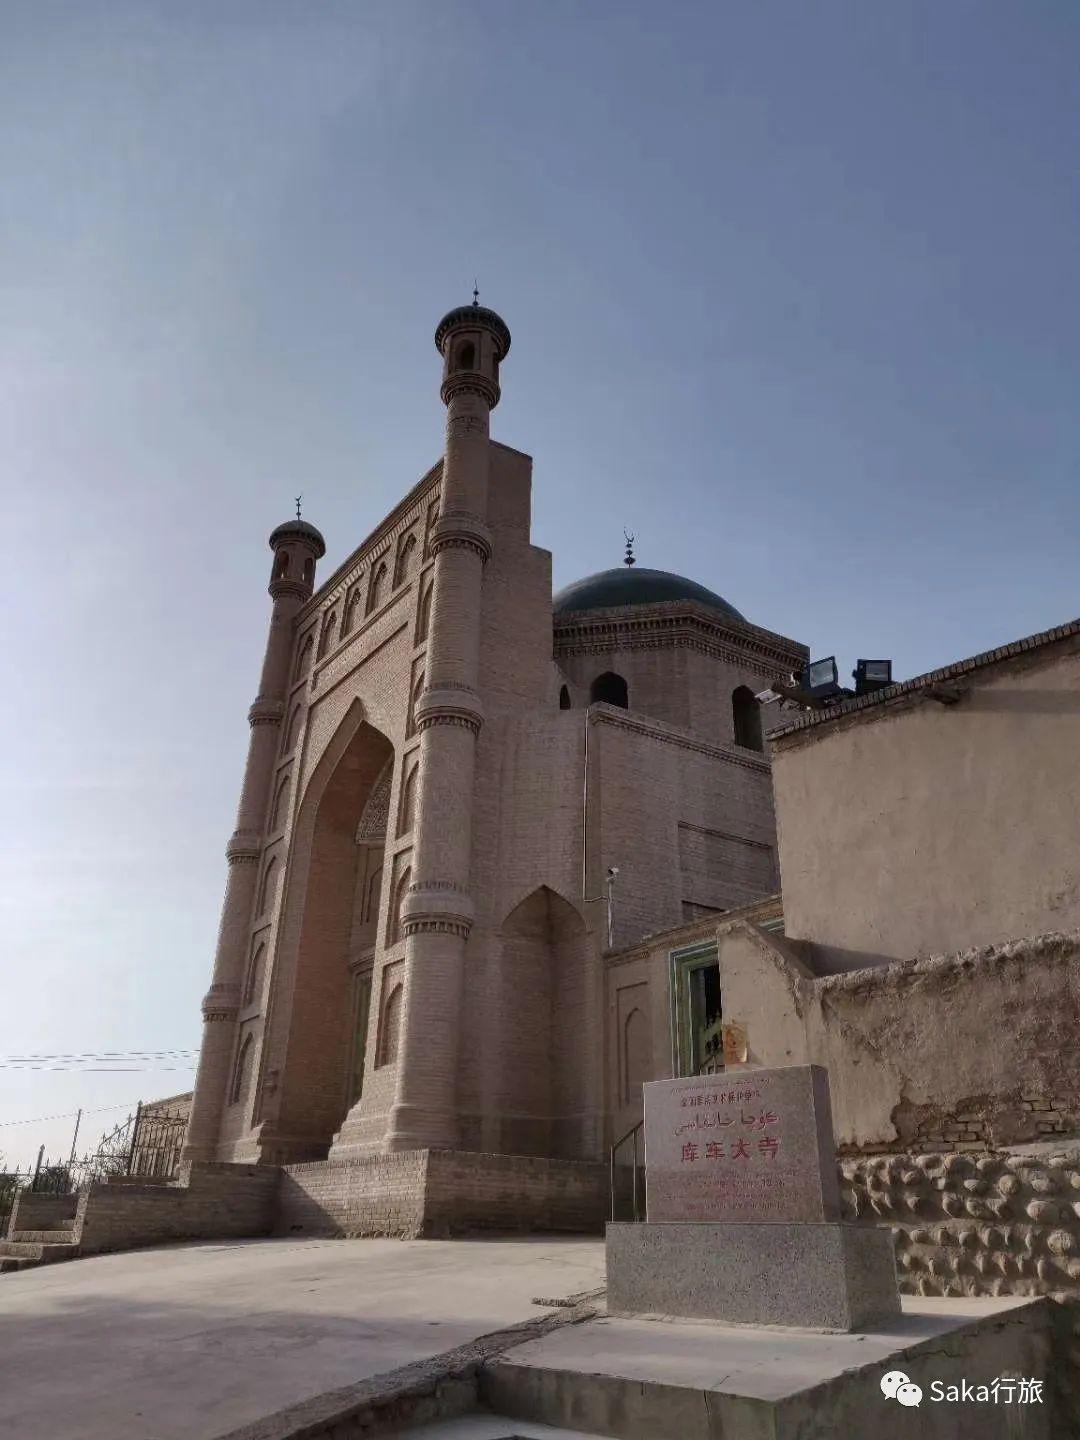 追溯其历史渊源,它是在波斯中亚伊斯兰建筑基础上融合了新疆本地建筑